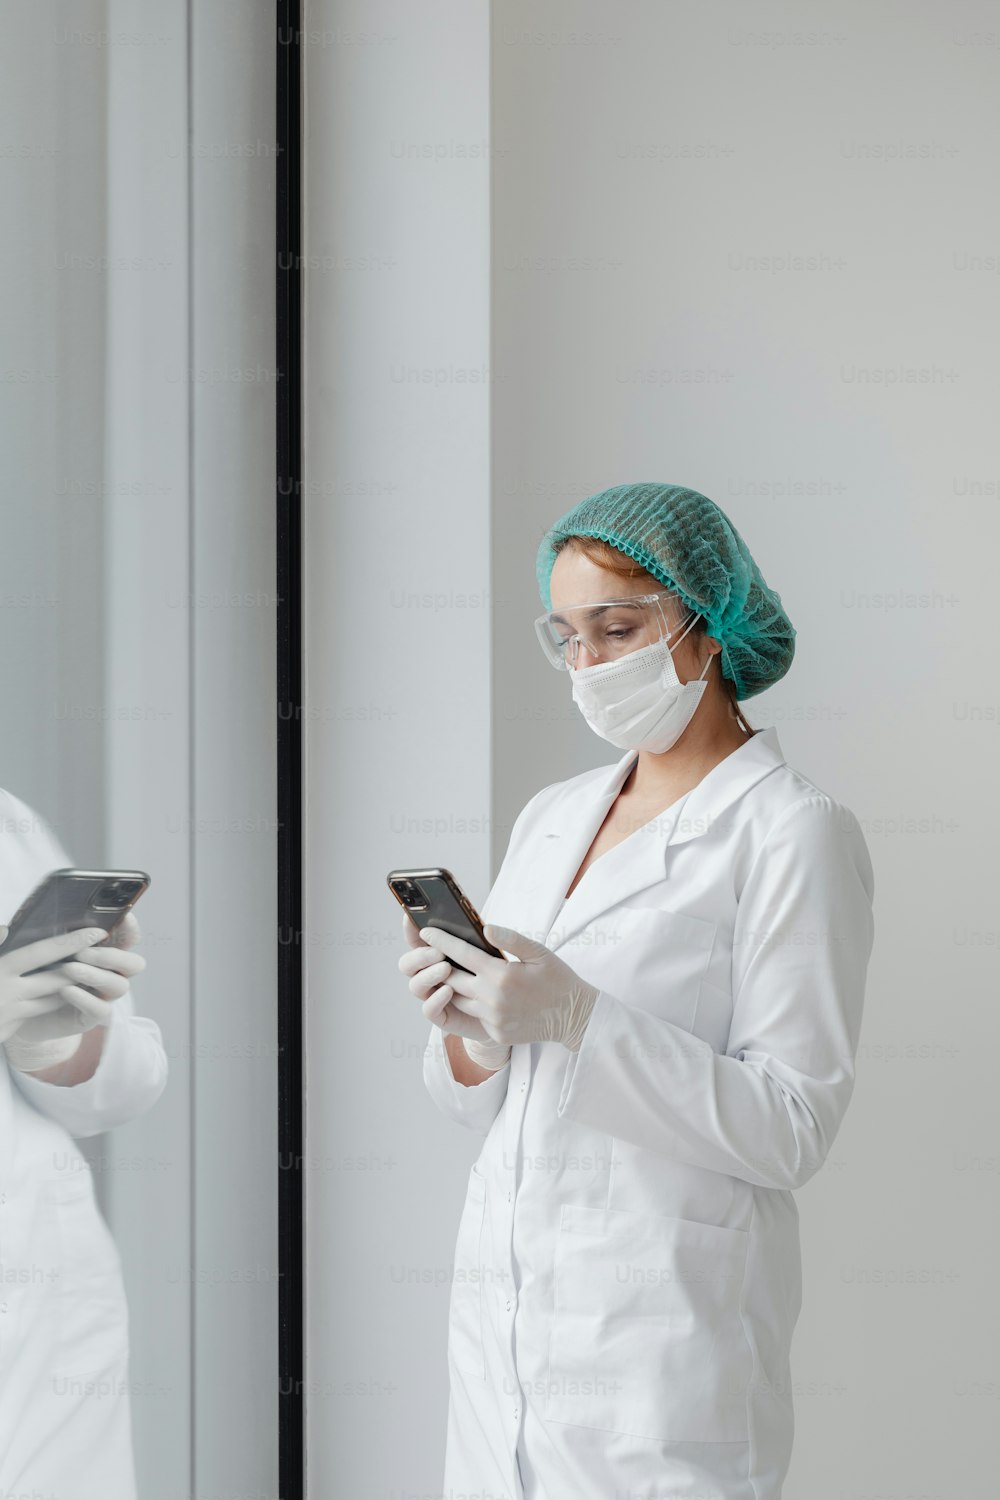 Une femme en blouse blanche et masque chirurgical regardant un téléphone portable